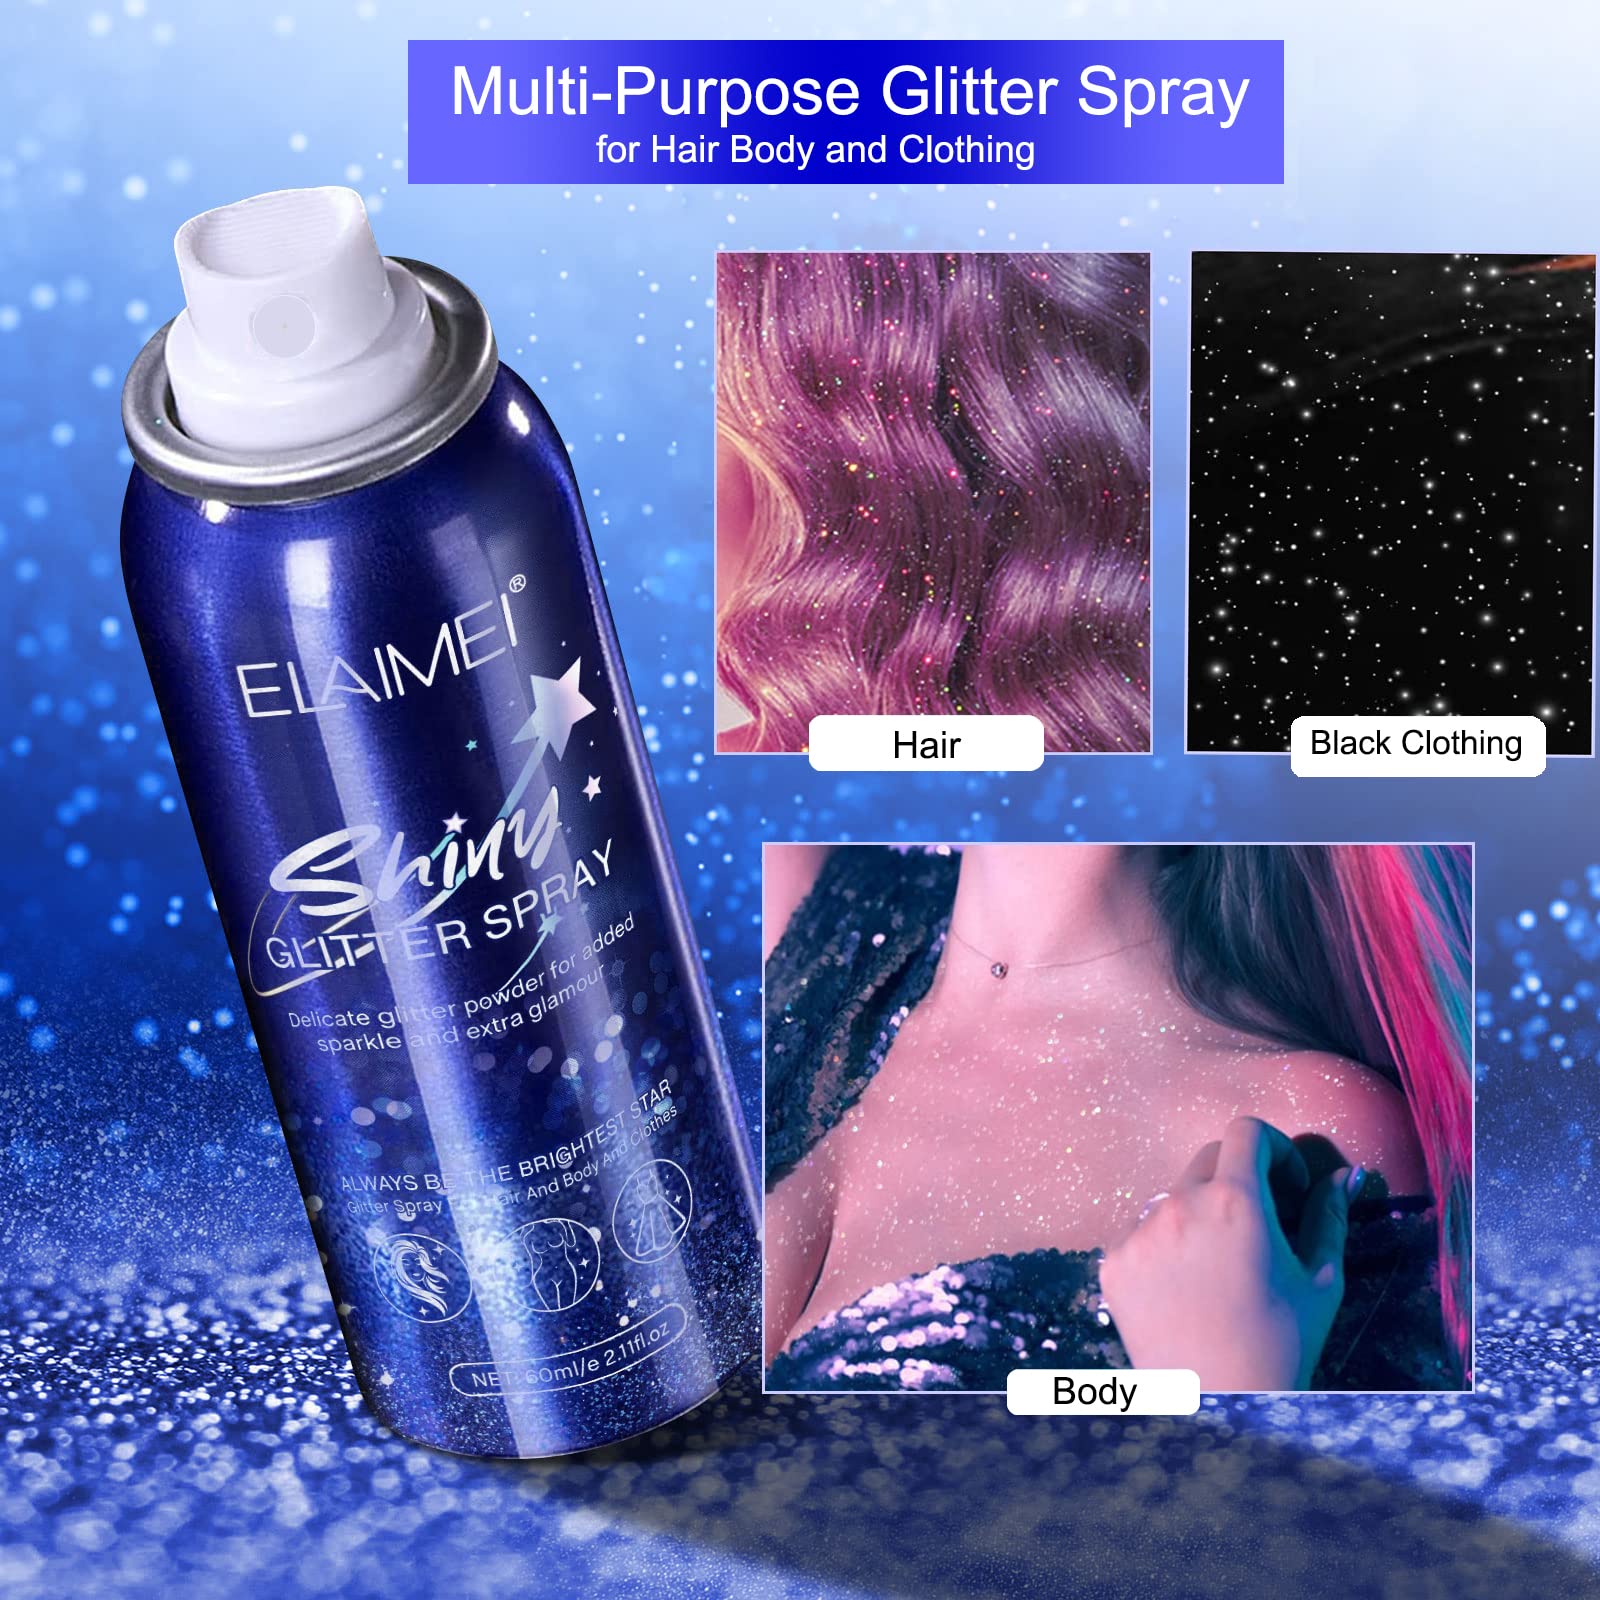 Shiny Glitter Spray, Body Glitter Spray, Hair Glitter Spray, Glitter Spray for Hair and Body (2.11 oz)